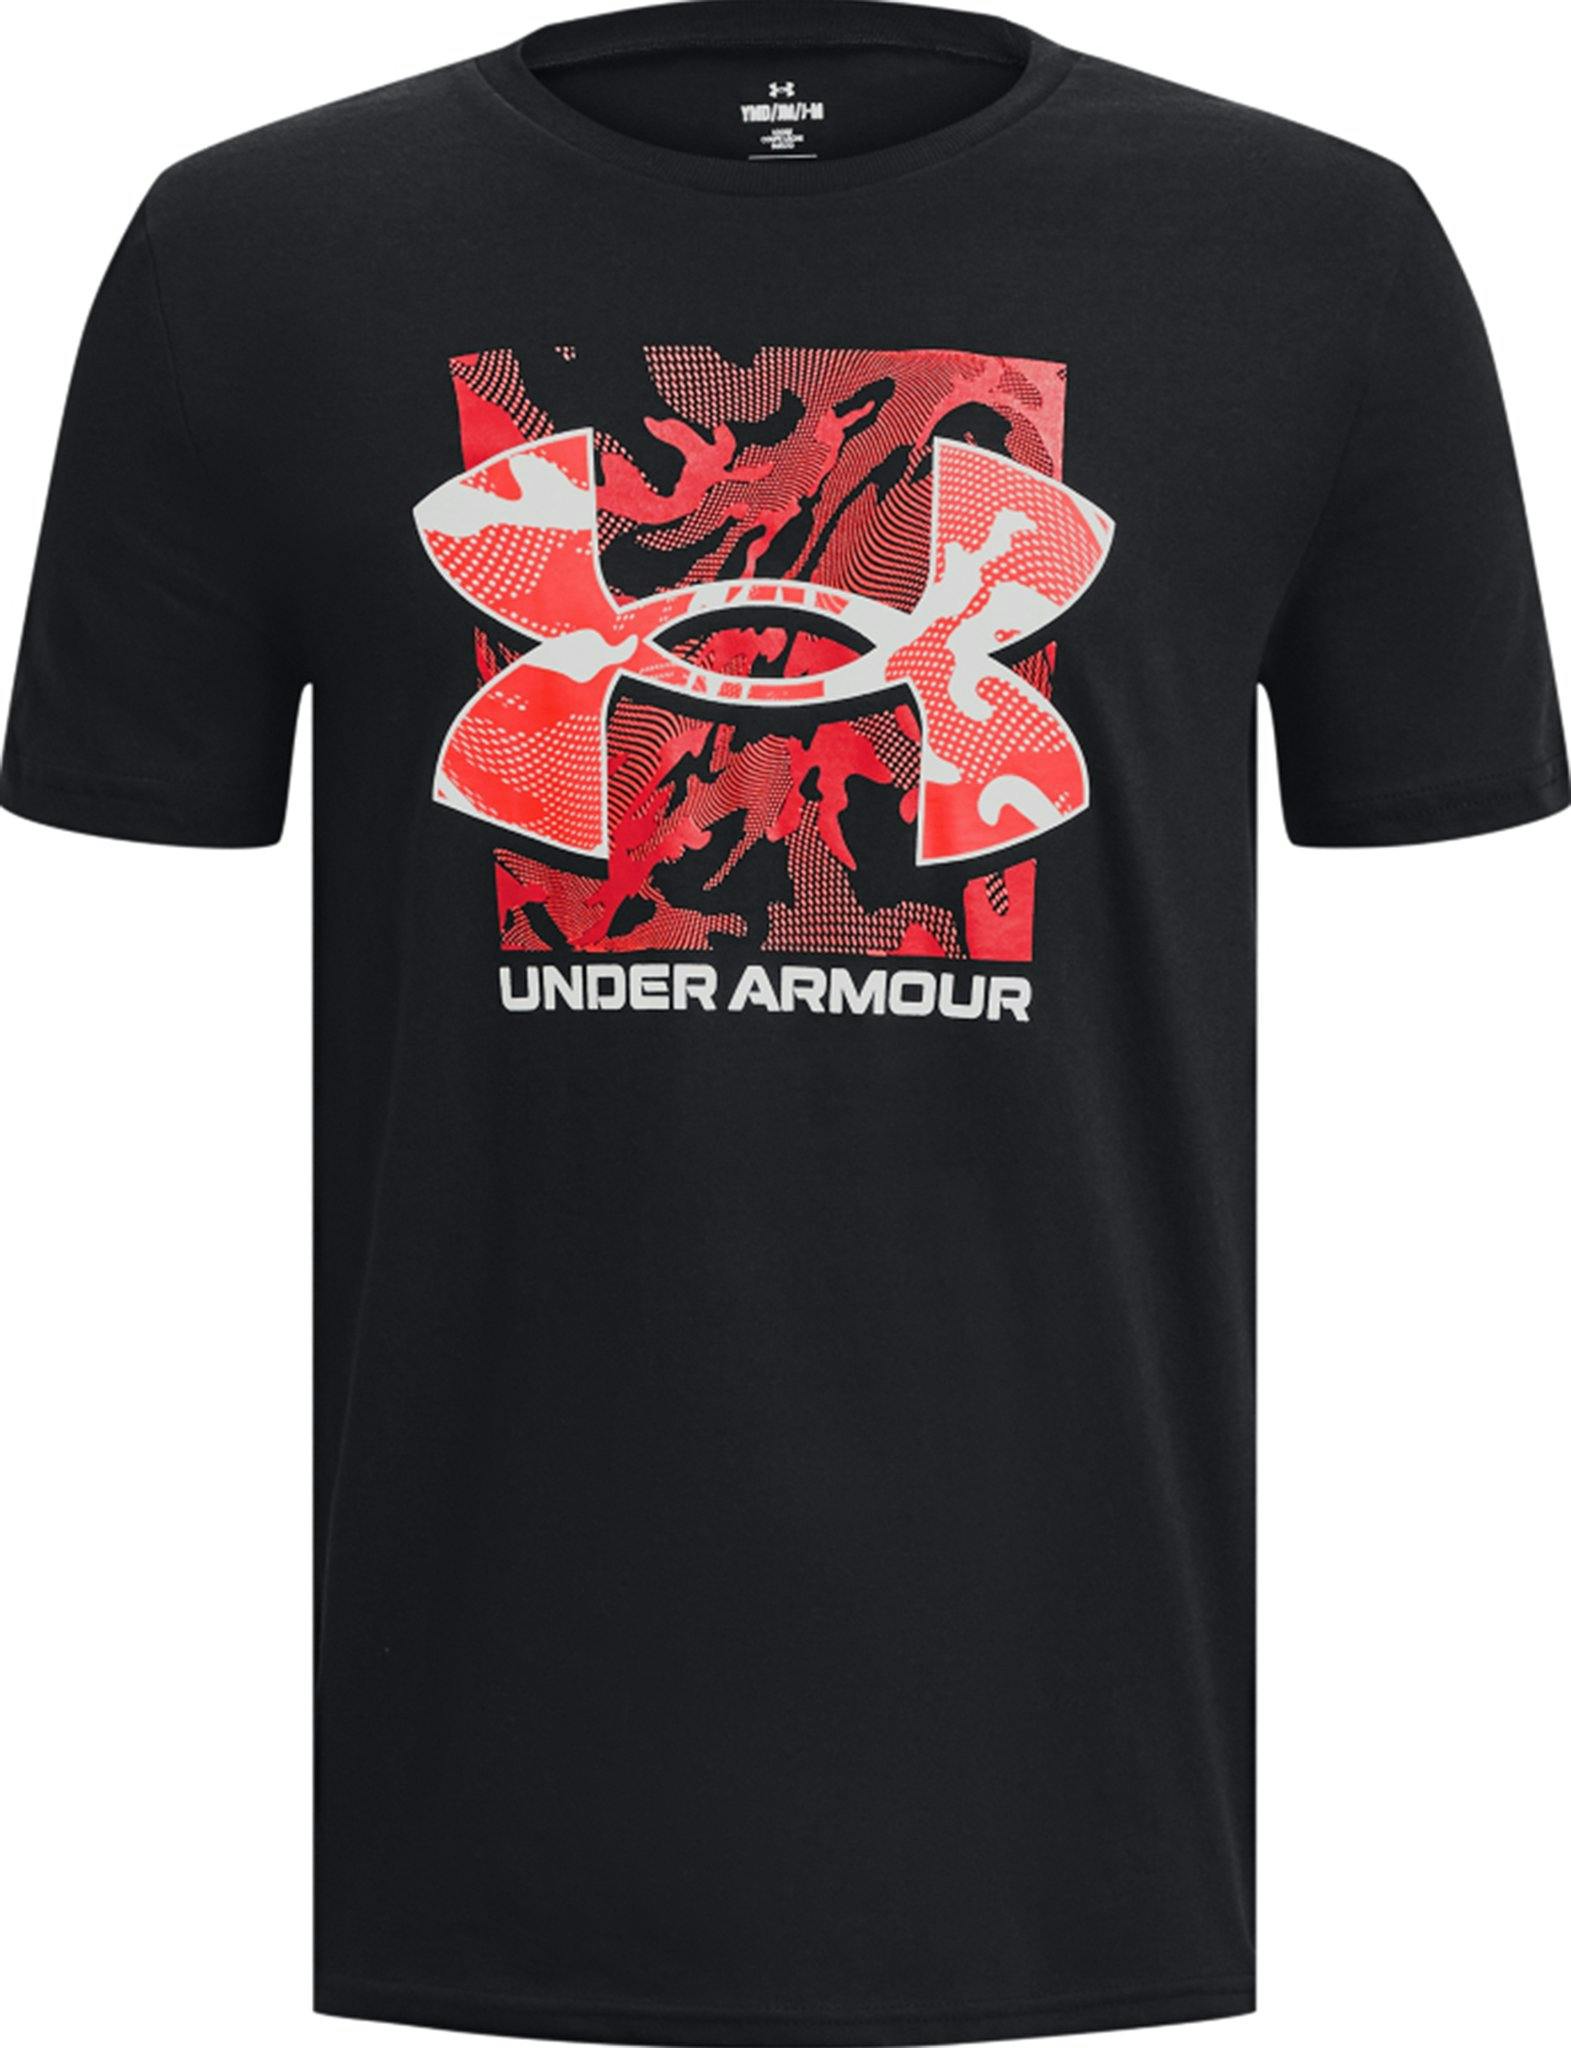 Image de produit pour T-shirt à manches courtes Box Logo Camo - Garçon